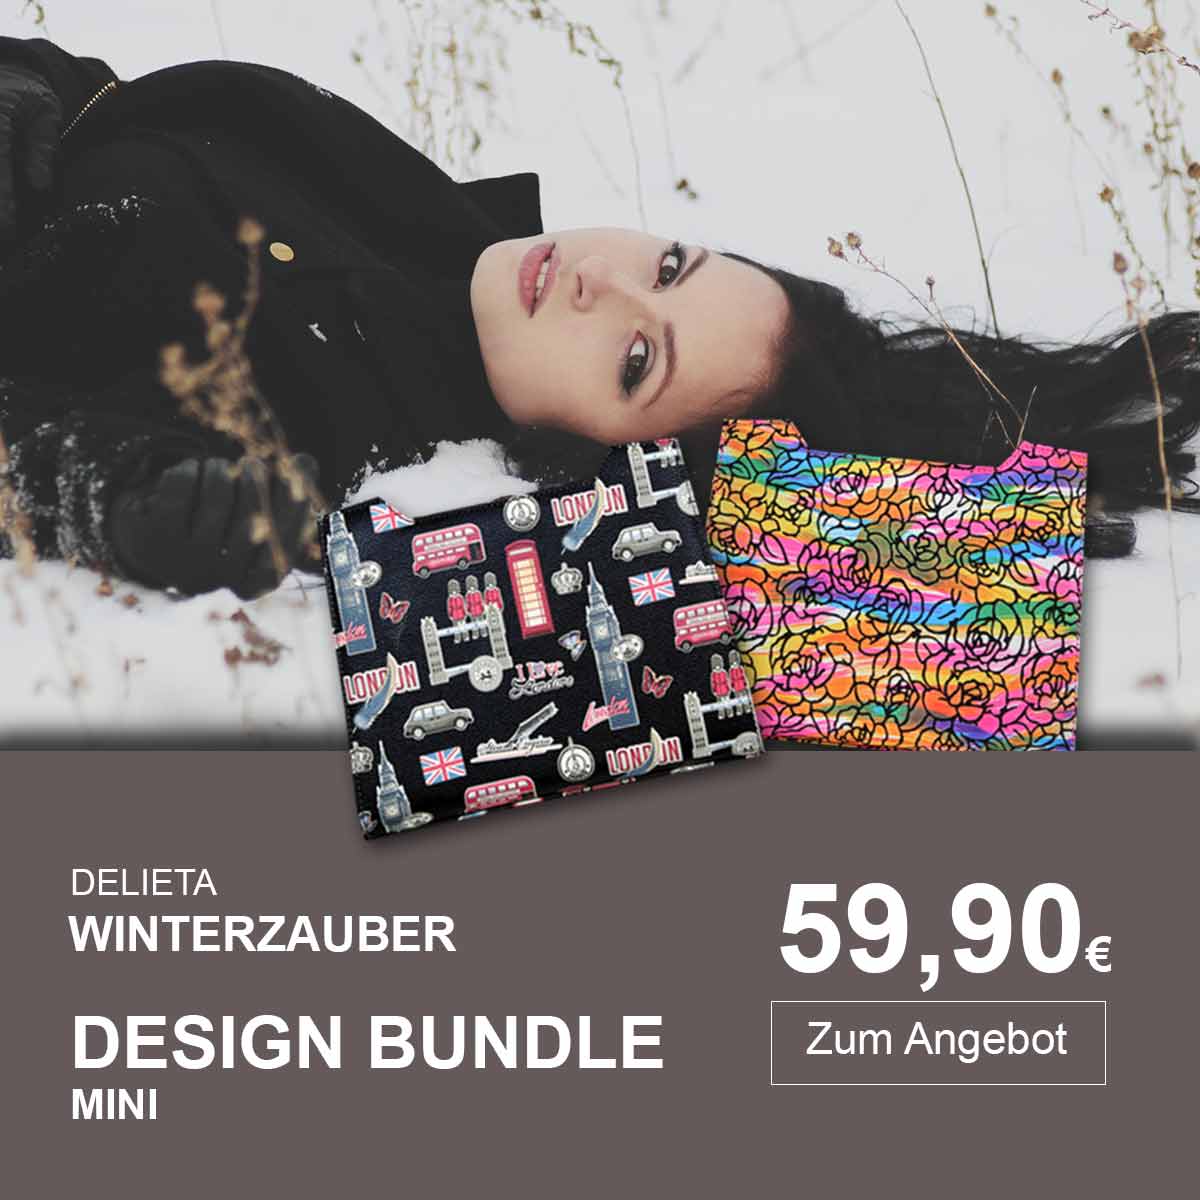 Design Bundle mini Winter